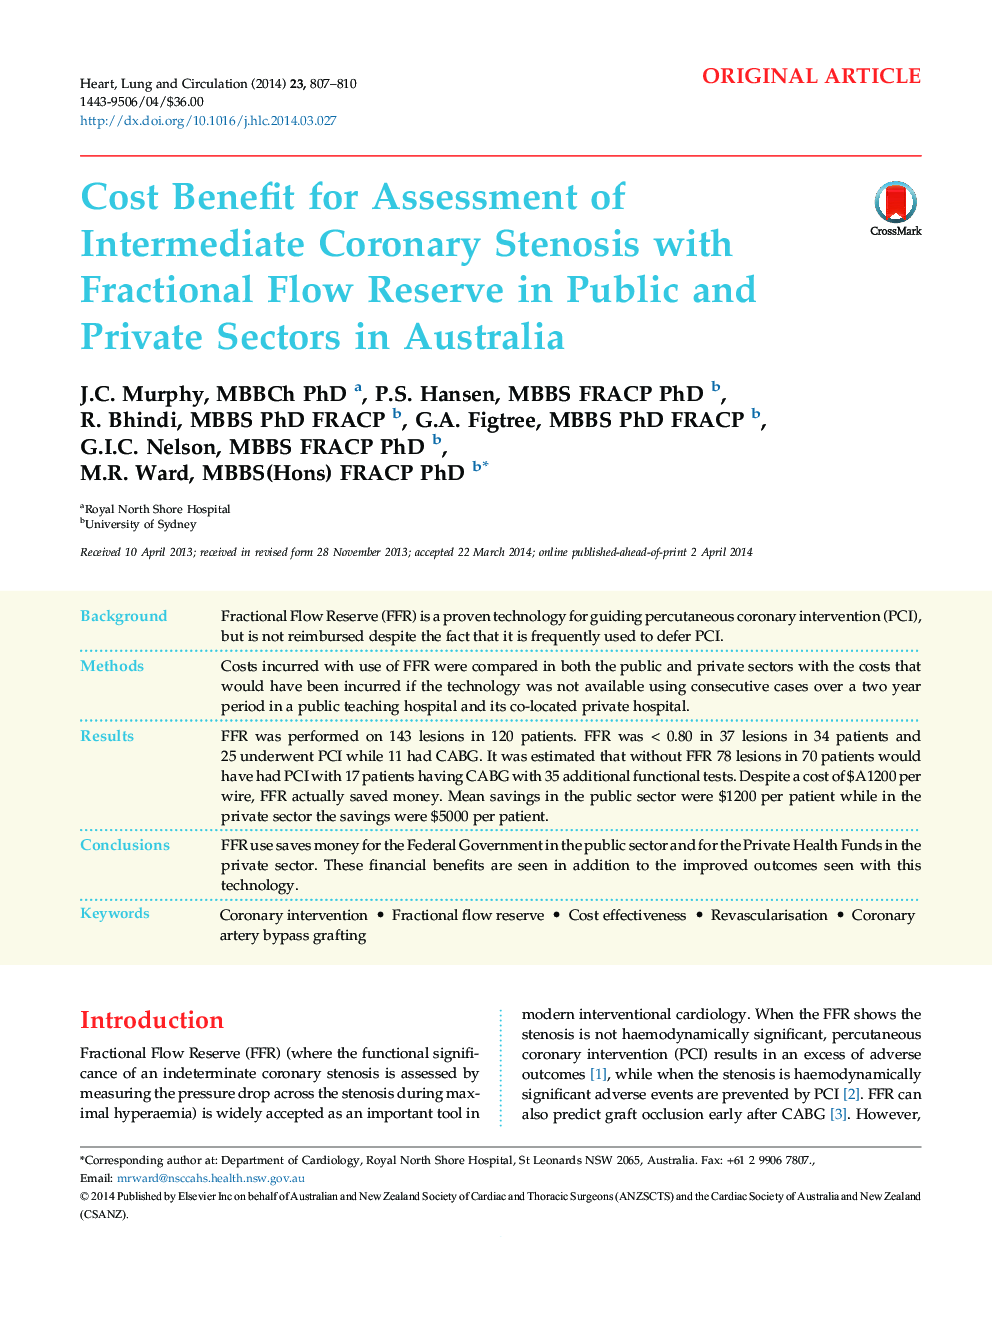 مزایای هزینه ارزیابی تنگی بین کرونر با مخزن جریان مایع در بخش خصوصی و خصوصی در استرالیا 